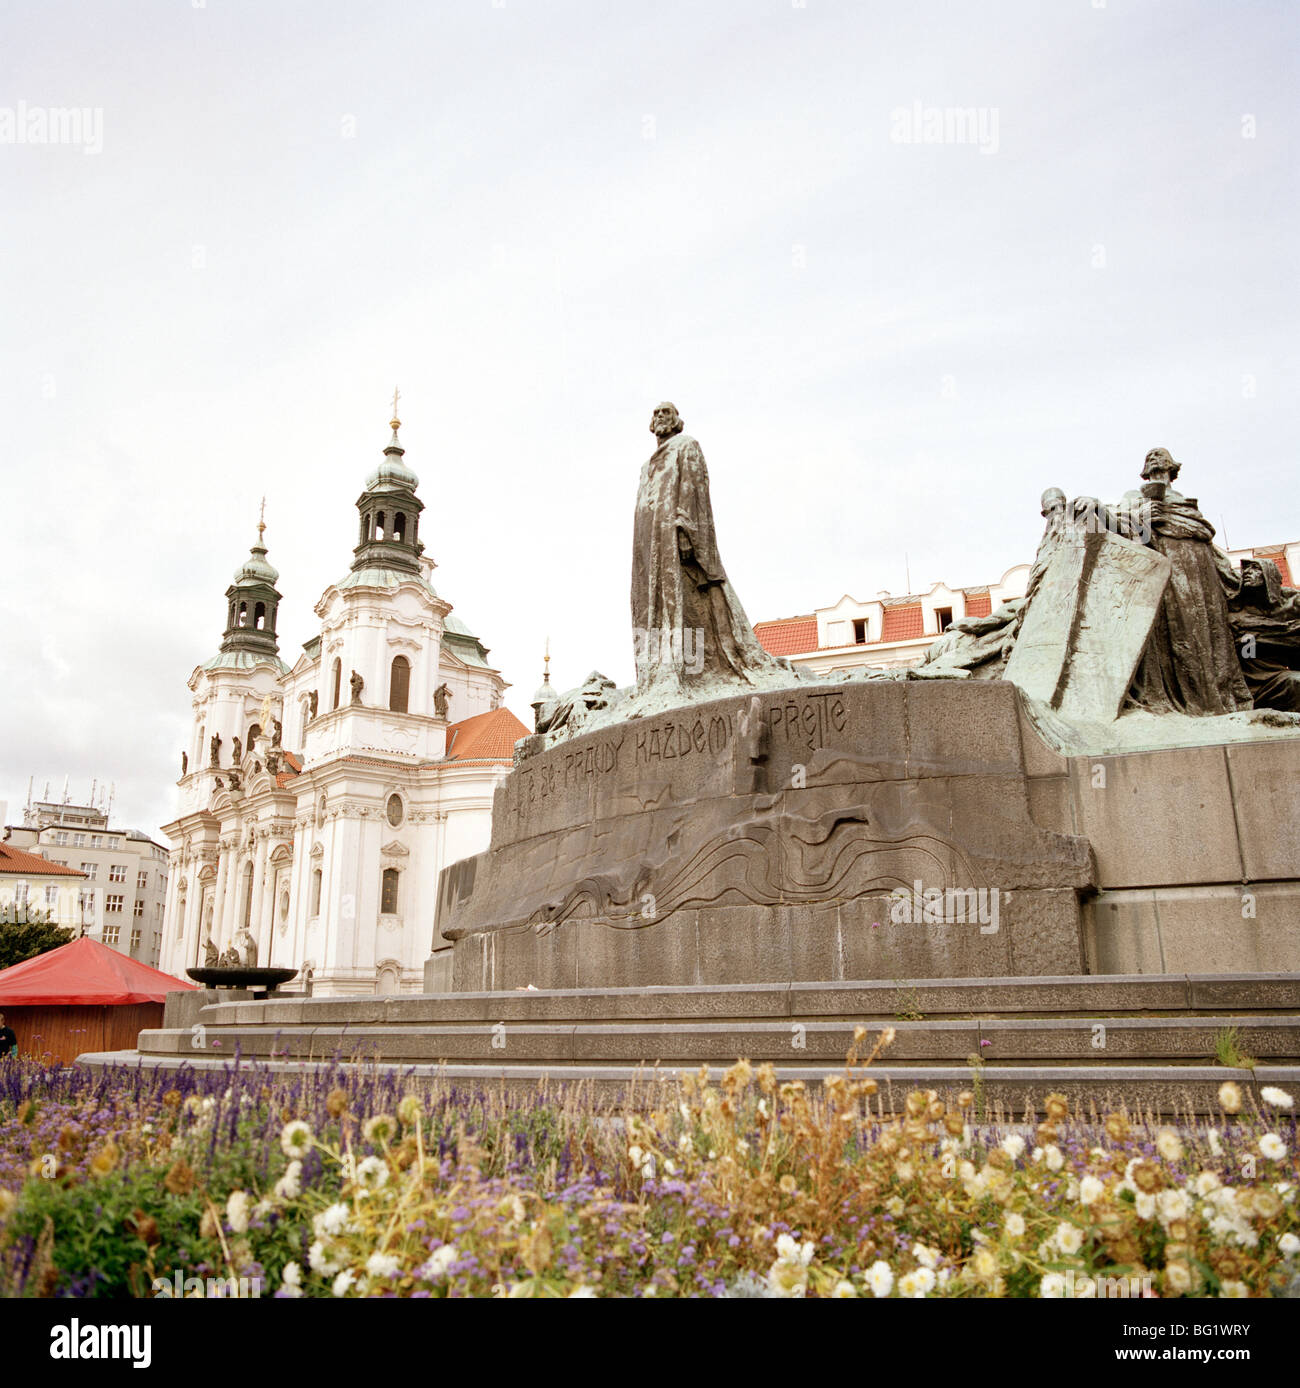 Welt zu reisen. Die Statue von Jan Hus am Altstädter Ring in Stare Mesto Altstadt von Prag in der Tschechischen Republik in Osteuropa. Kulturgeschichte Stockfoto